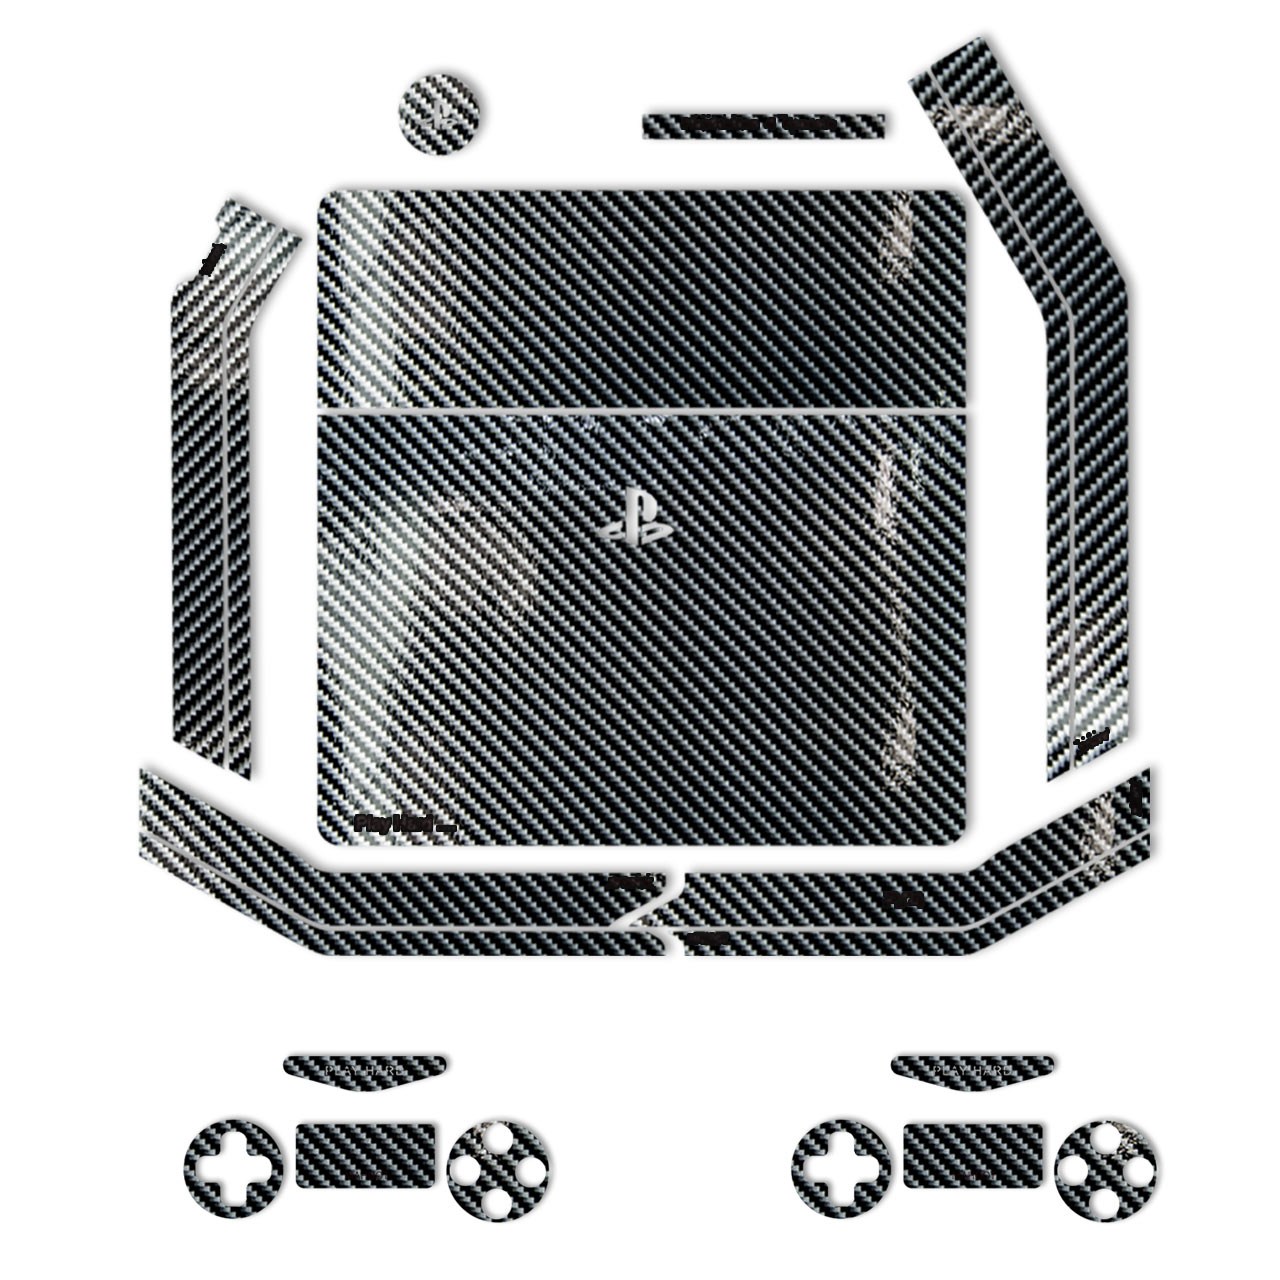 برچسب ماهوت مدل Silver Shine-carbon Special مناسب برای کنسول بازی PS4 Slim